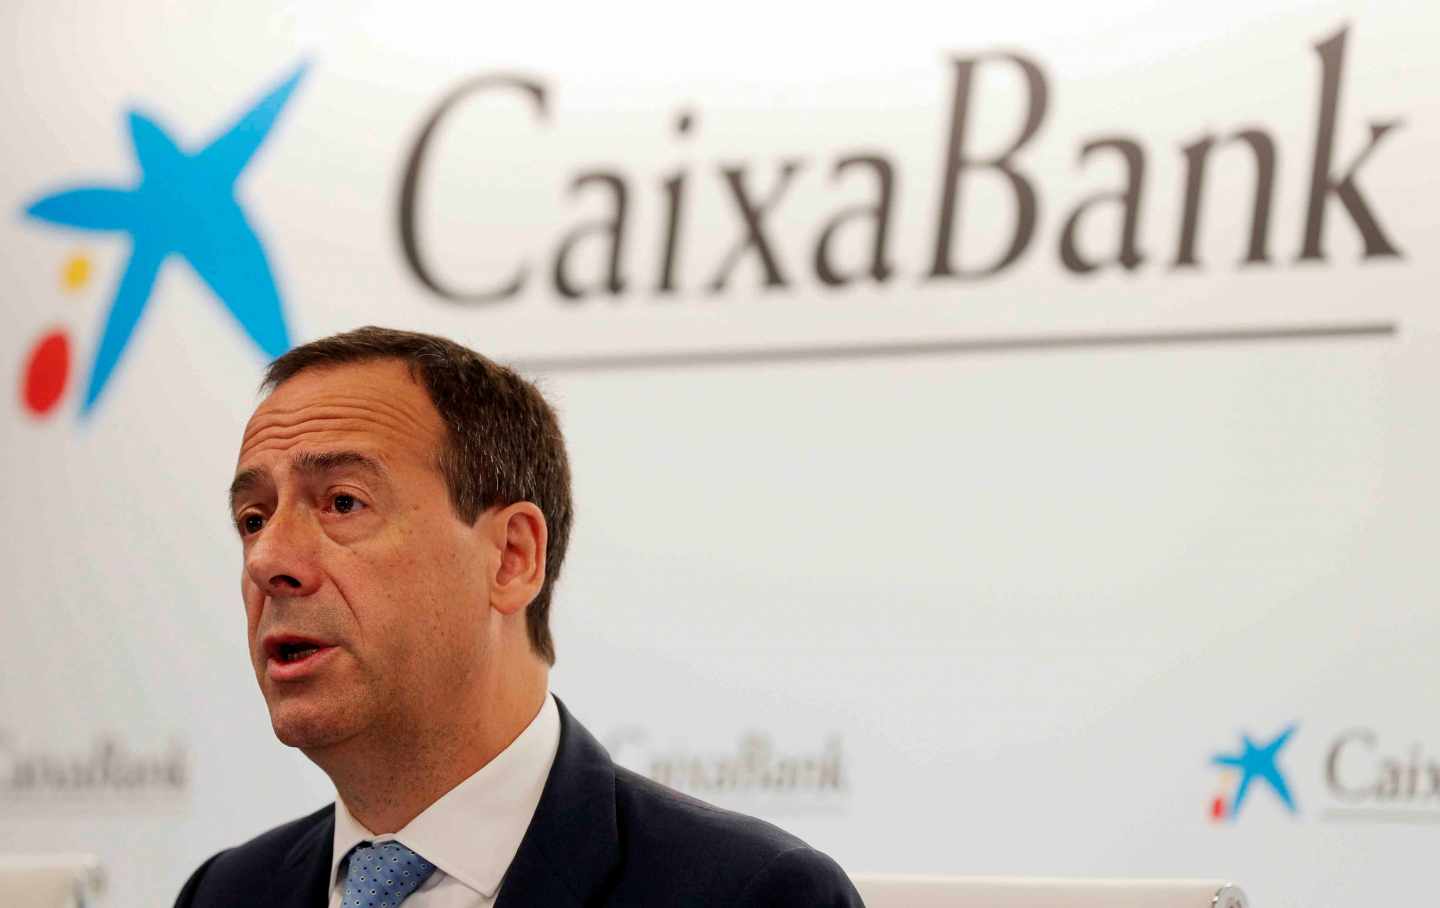 CaixaBank pide "que los políticos trabajen para formar un Gobierno pronto".